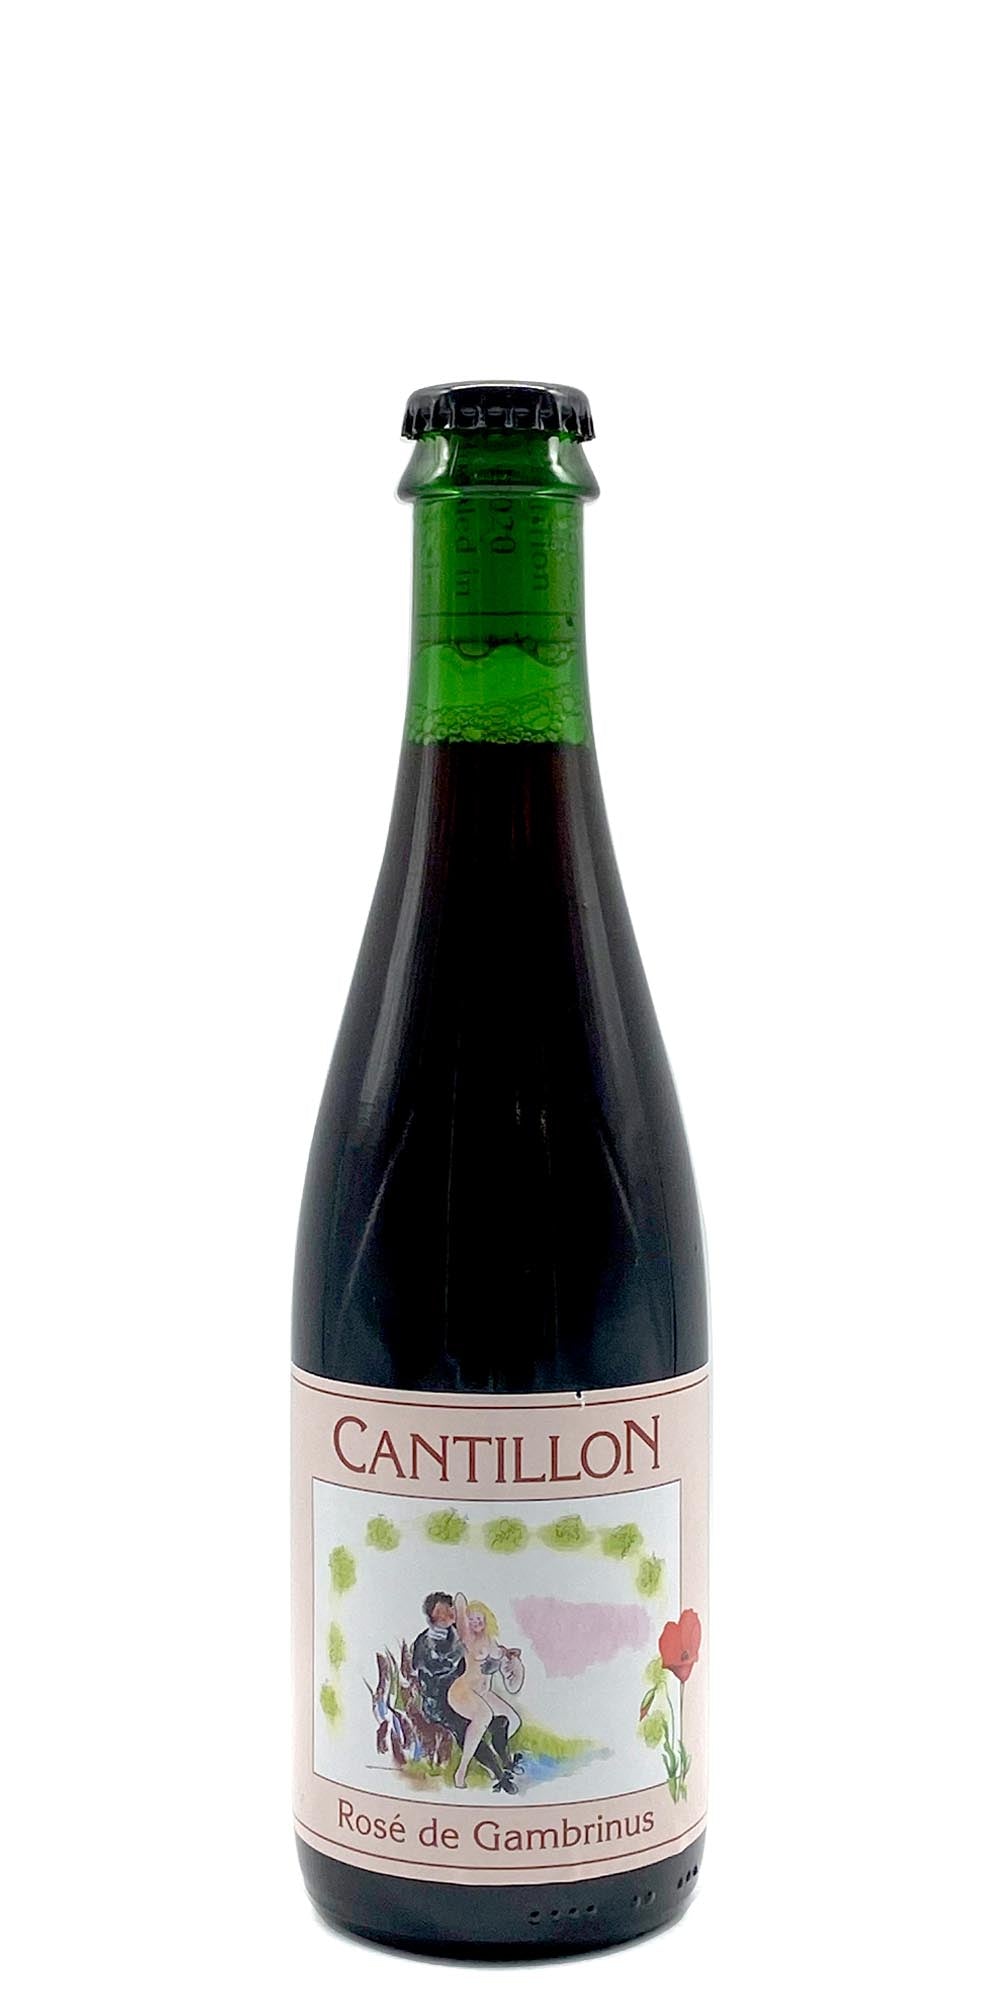 Cantillon - Rose de Gambrinus (2015) (subscriber only)